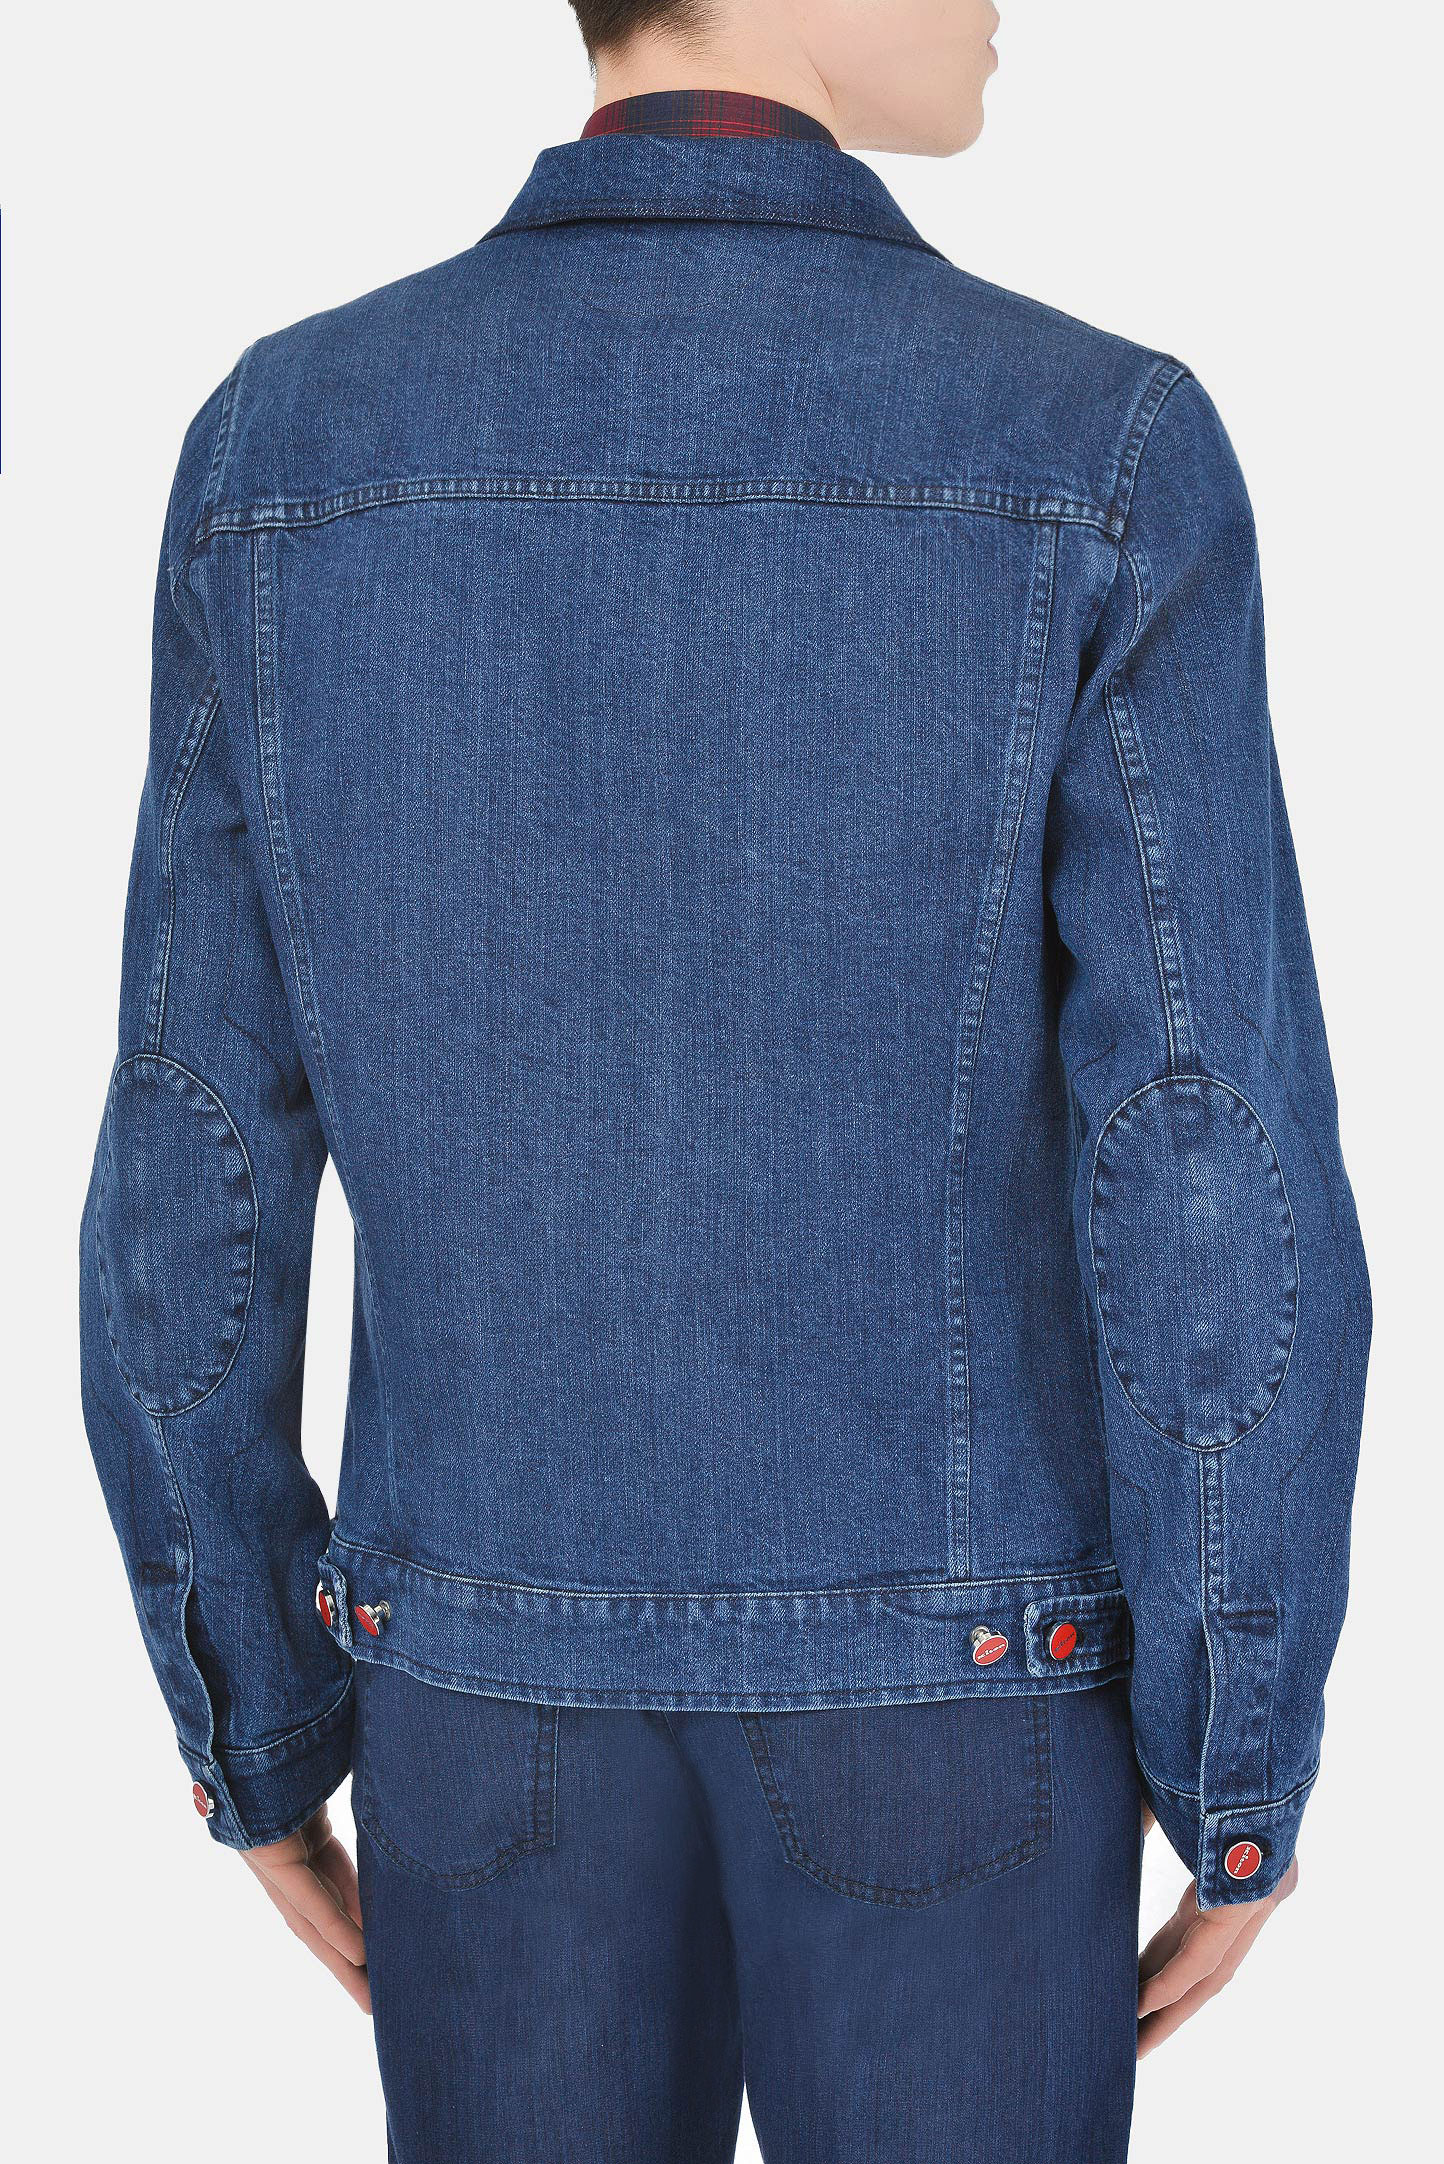 Куртка KITON UW0872V07T670, цвет: Синий, Мужской